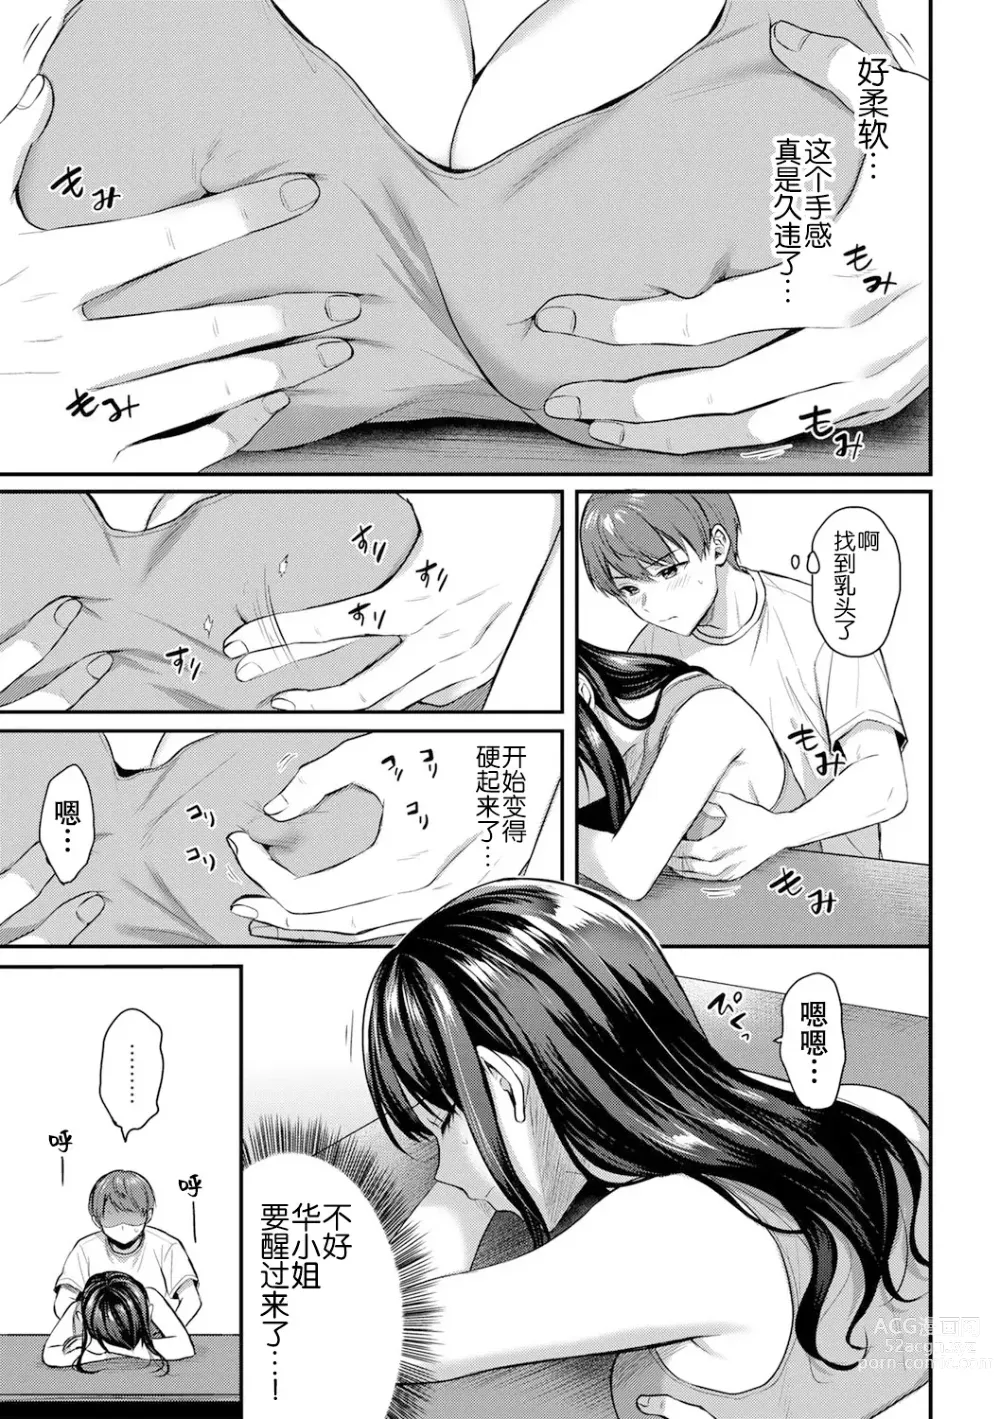 Page 5 of manga 今天也不行…?